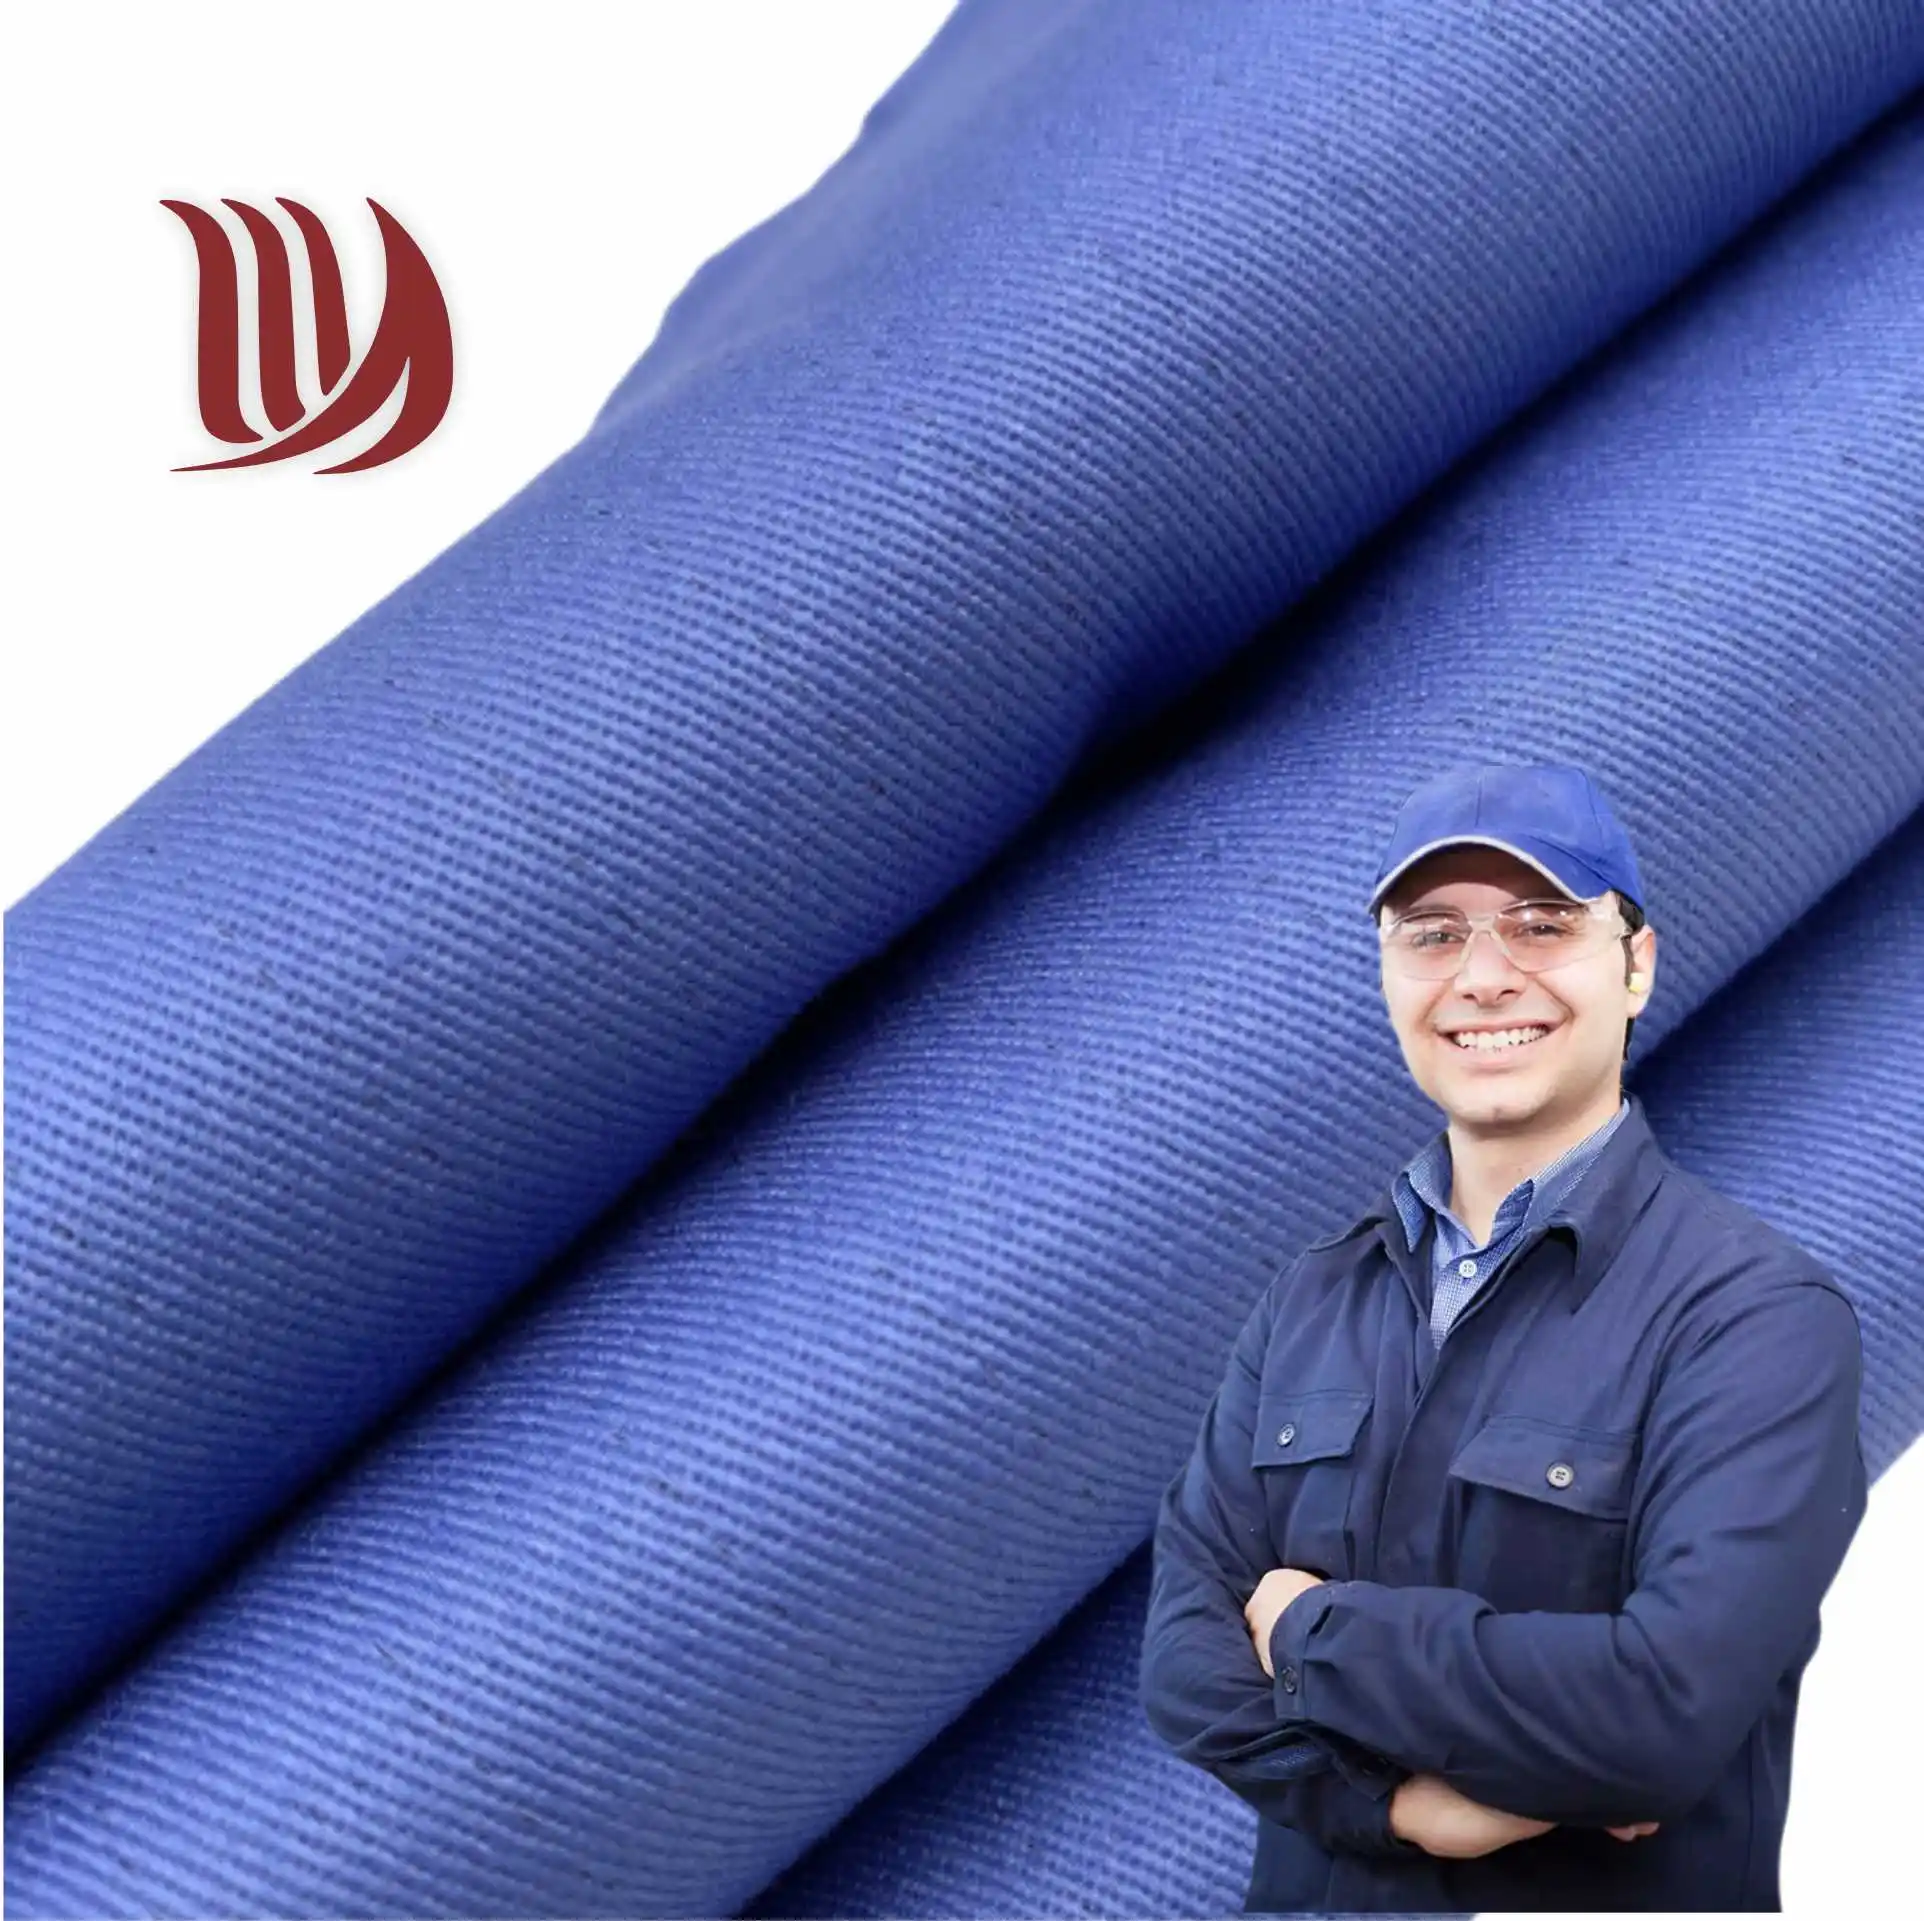 Tissu de costume de travail T/C 80/20 21*16 128*60 tissu de coton polyester sergé pour uniformes